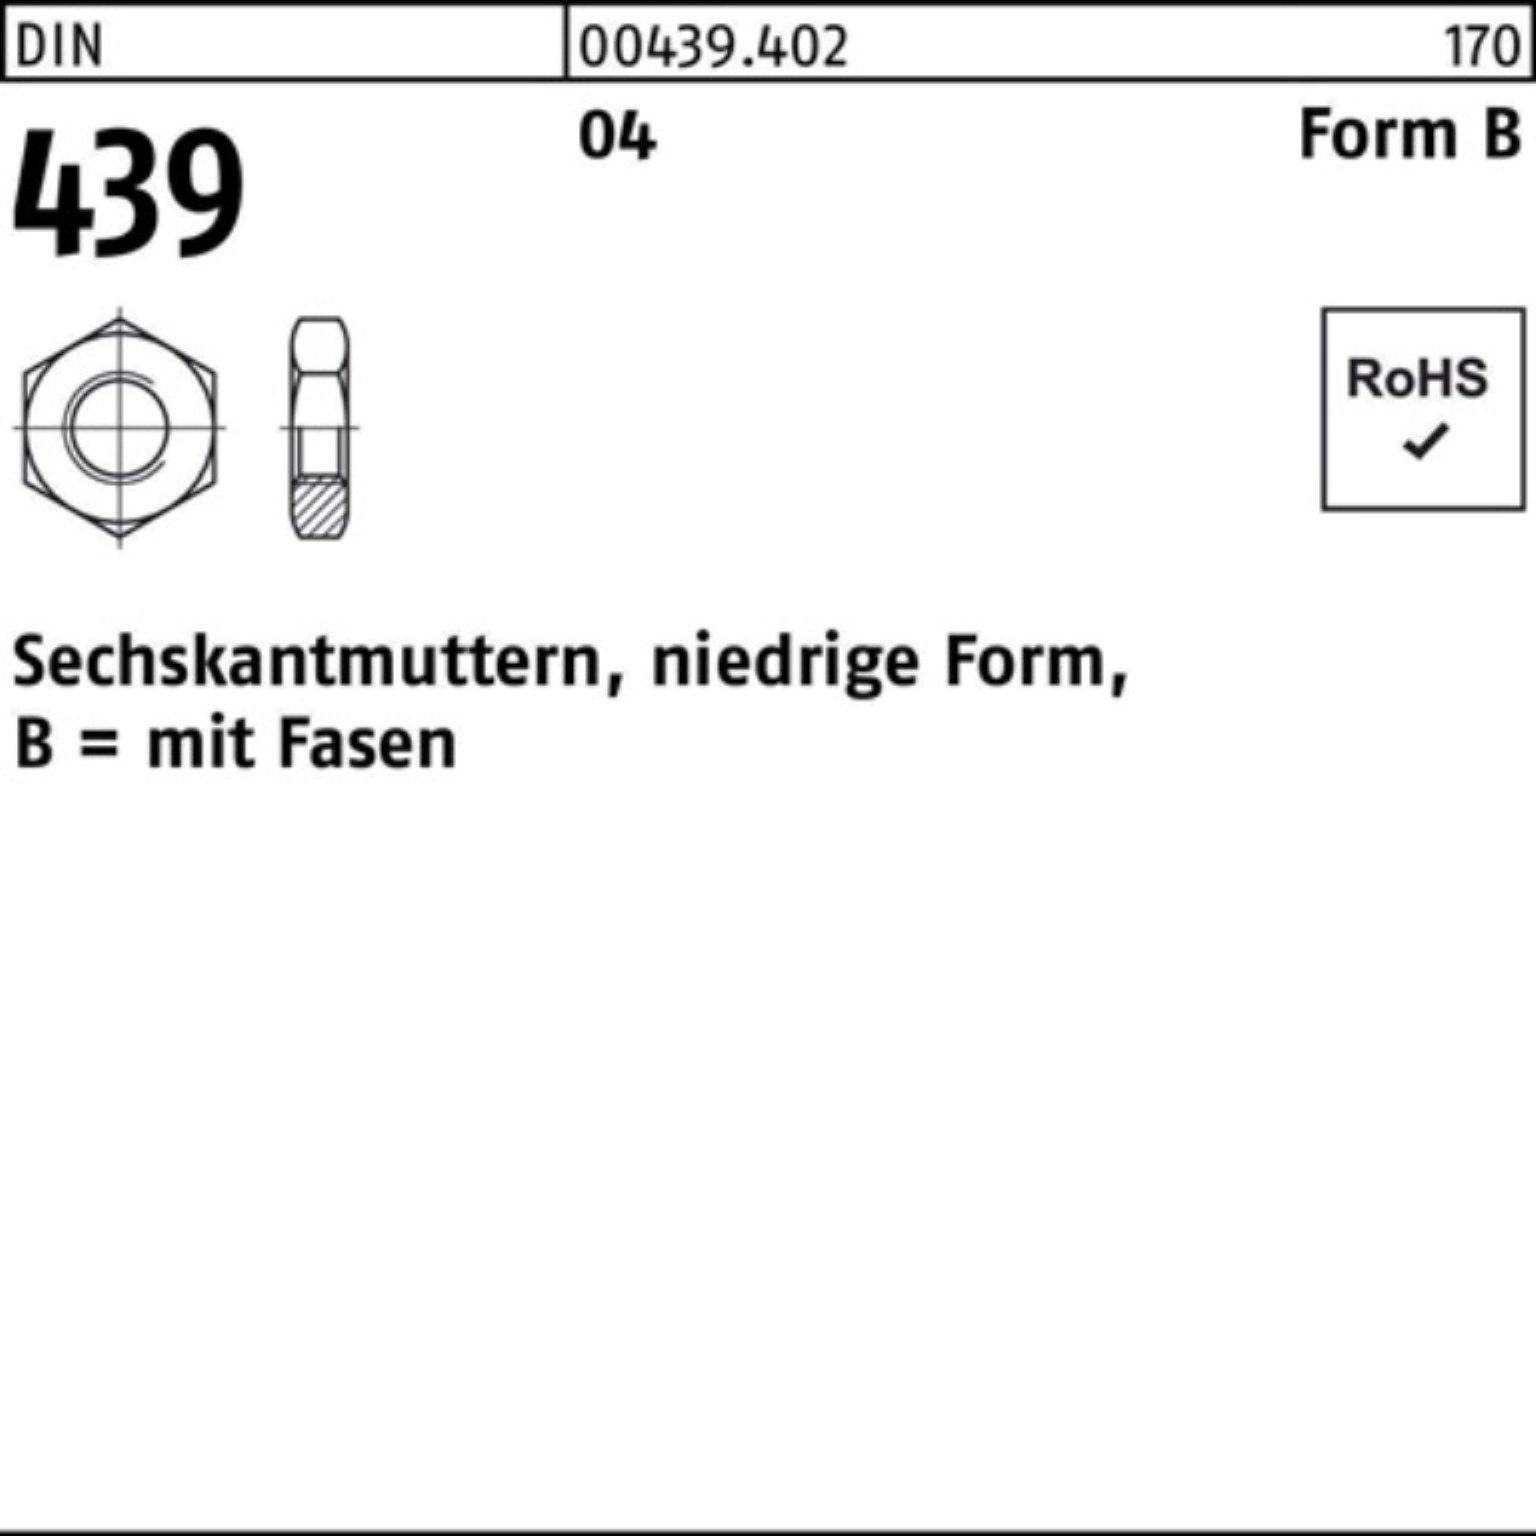 4 FormB 439/ISO Sechskantmutter 4035 Muttern Automatenstahl Reyher 1000er Pack DIN BM